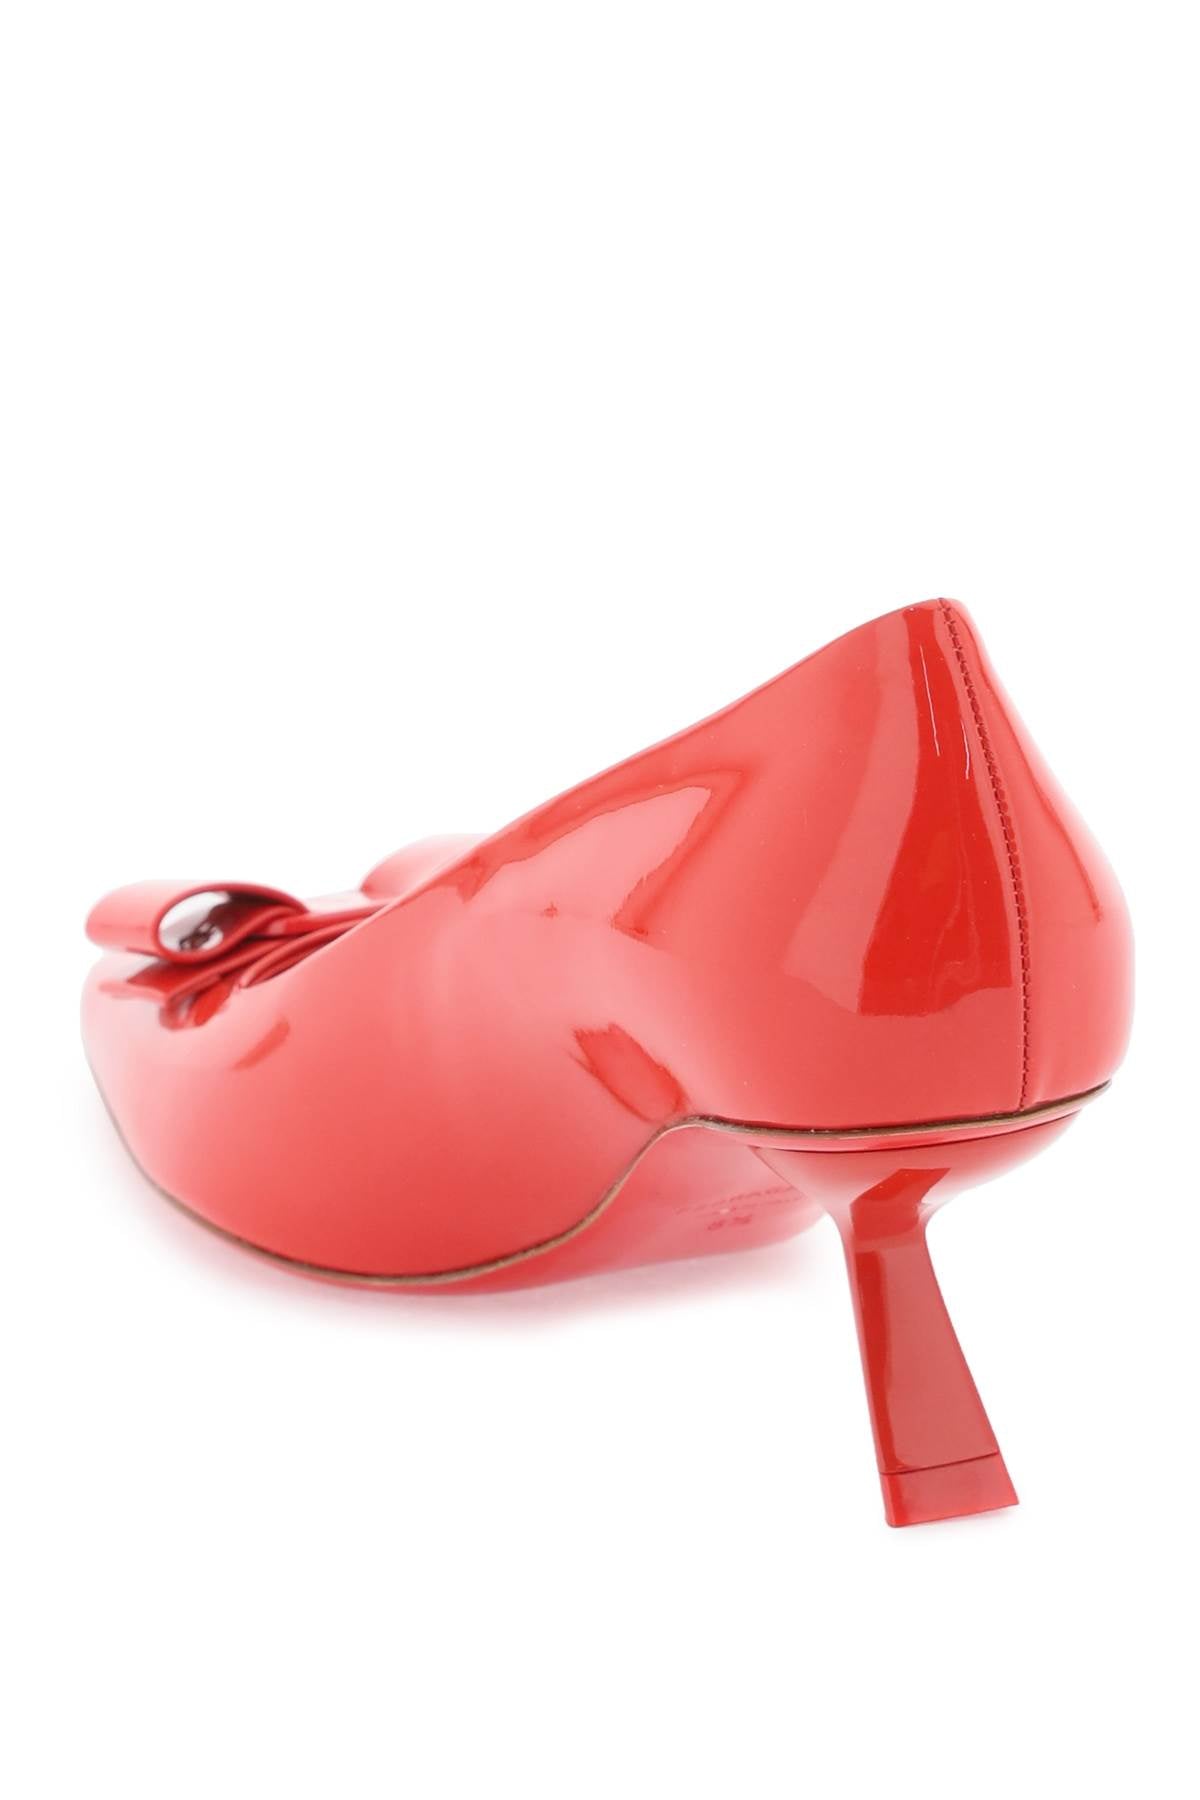 Giày cao gót giản dị mà tinh tế với thiết kế nữ hoàng, chất liệu da bóng màu đỏ - Giày cao gót thời trang nữ